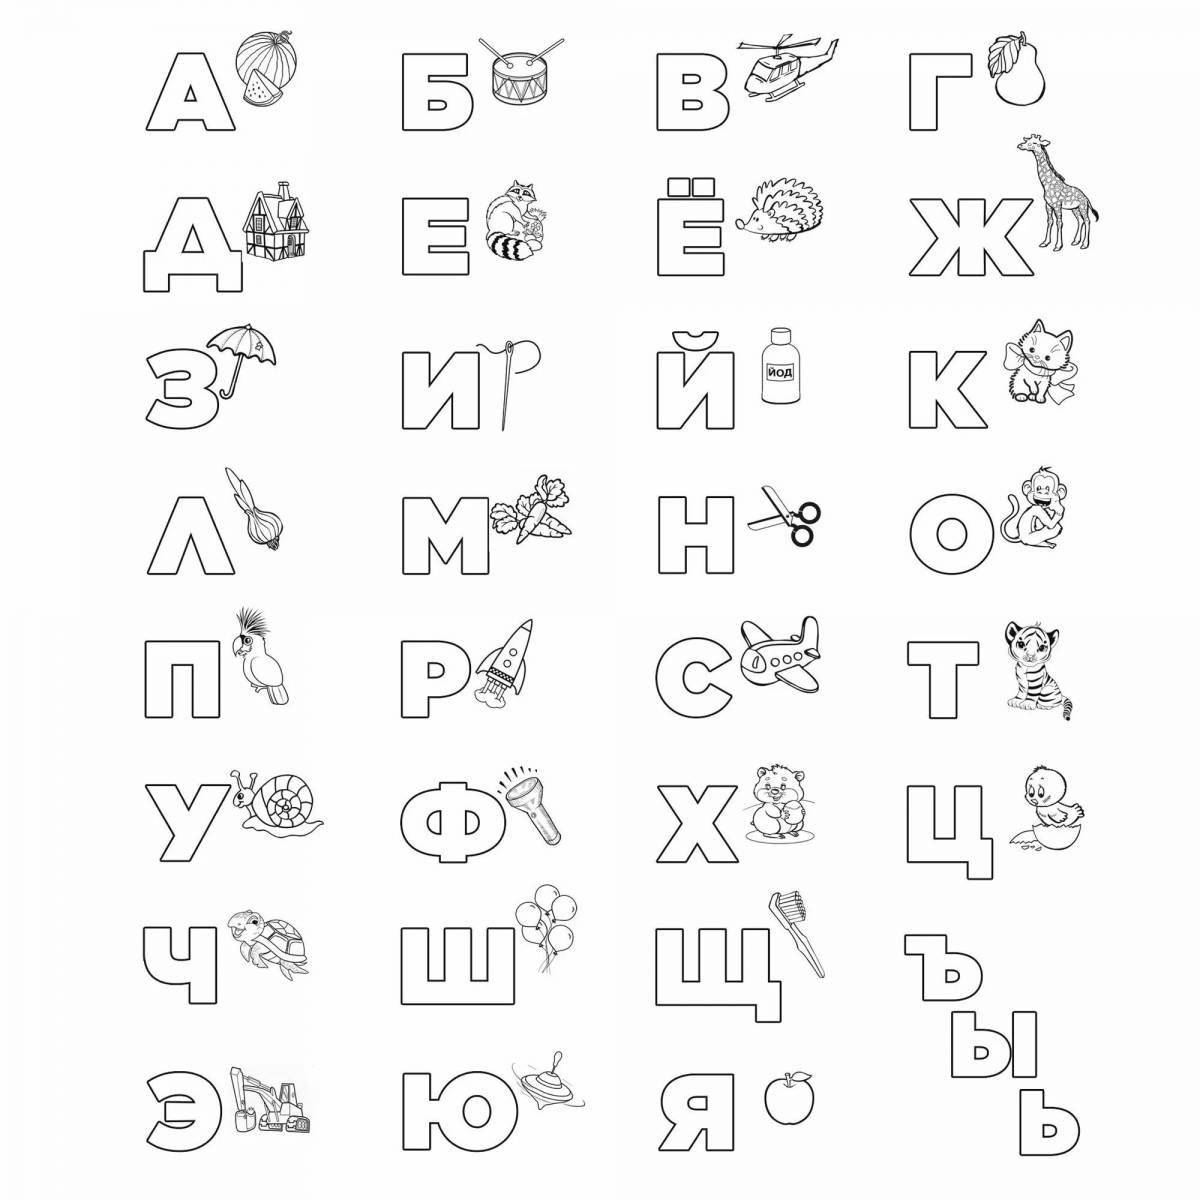 Раскраска мистический казахский алфавит